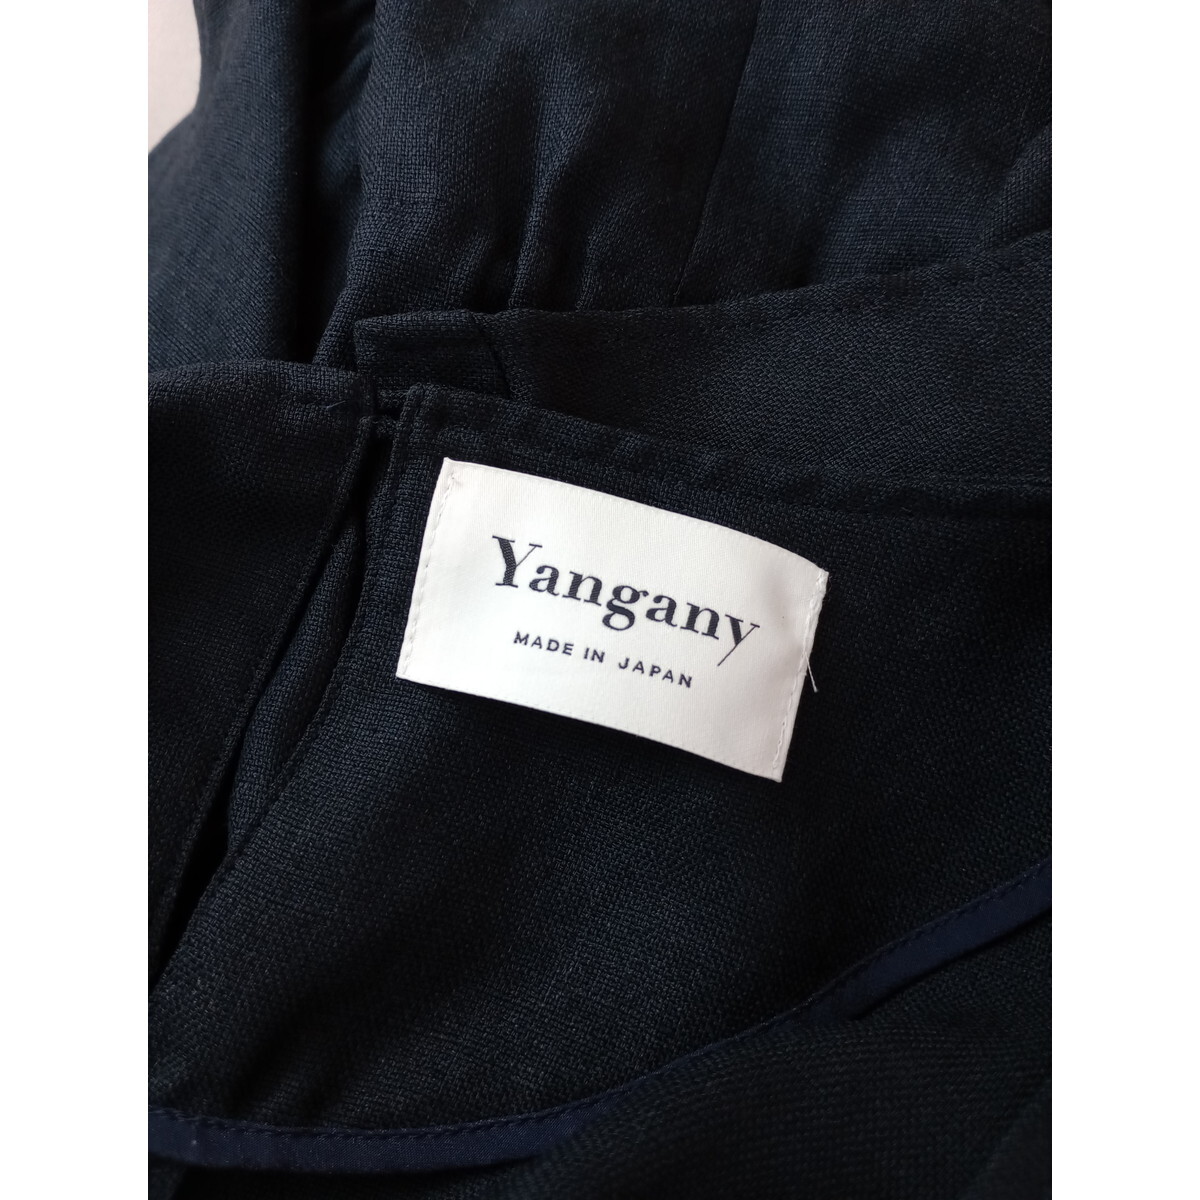 yangany ヤンガニー「頑張りすぎない、でも手抜きに見えない」ドロスト ペプラム プルオーバー 半袖 ブラウス 日本製 38 (66S+0594)の画像5